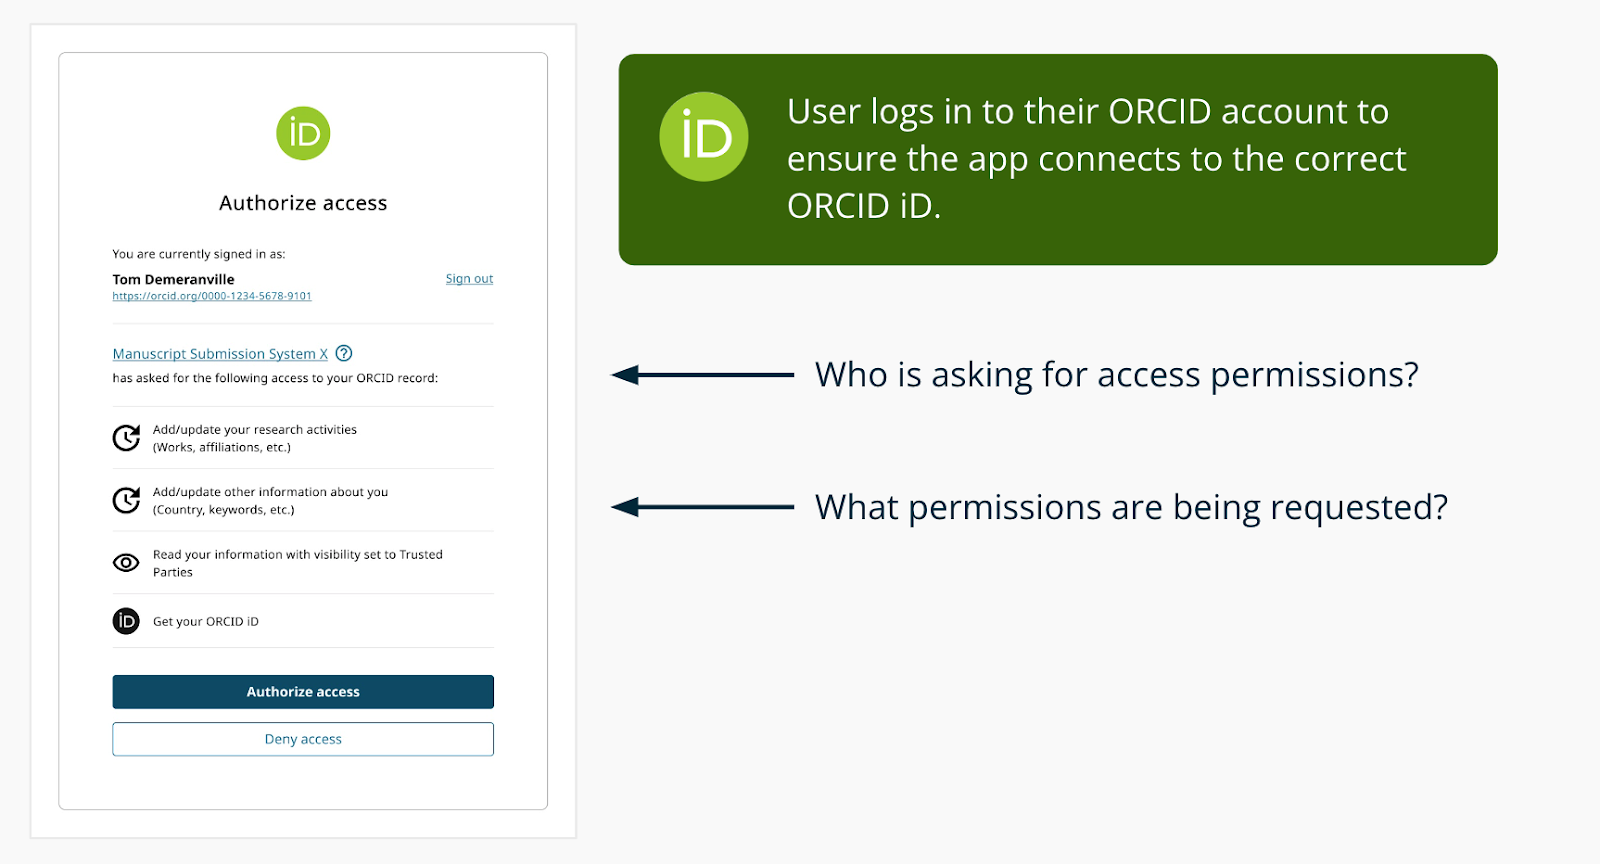 Immagine che mostra ORCID Schermata di autorizzazione OAuth con chi chiede l'autorizzazione e quali autorizzazioni stanno richiedendo